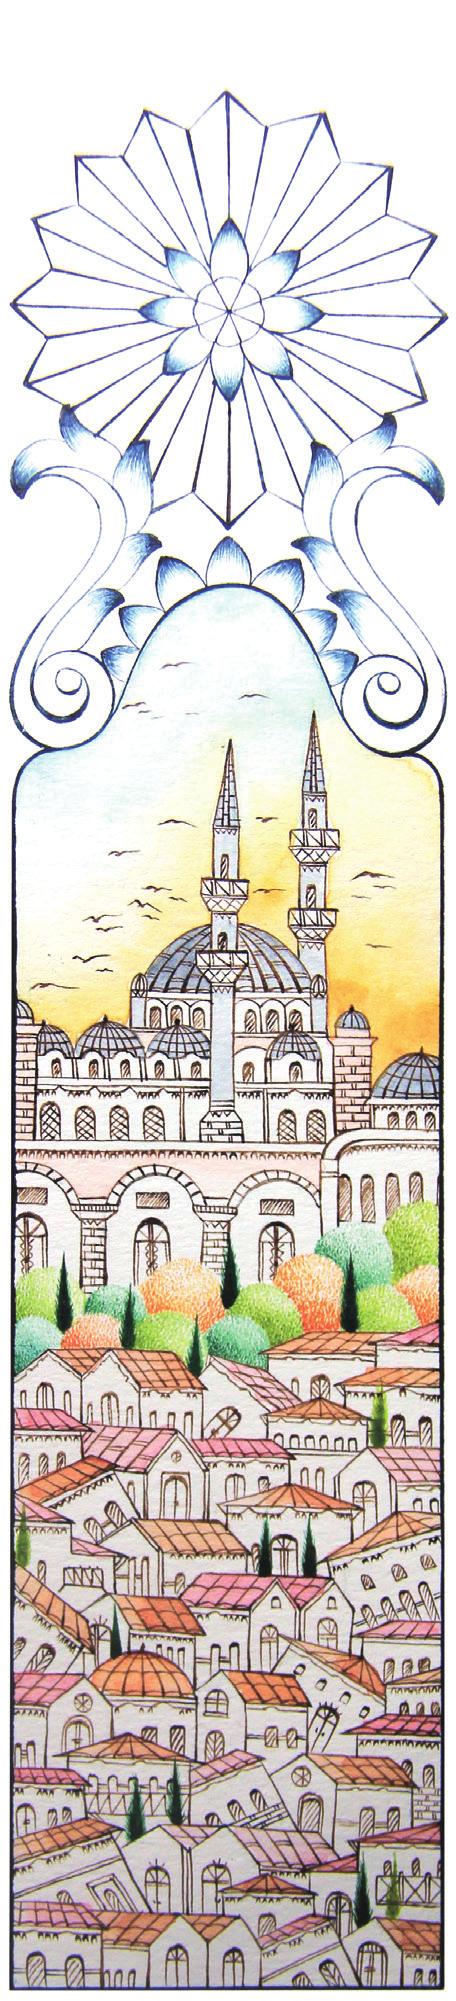 KİTAP AYRACI Fatih Sultan Mehmet tarafından fetihten hemen sonra Eyyüb el-ensari nin türbesi yaptırılmış, sonrasında yakınına cami, medrese, imaret ve hamam gibi yapıların eklenmesiyle